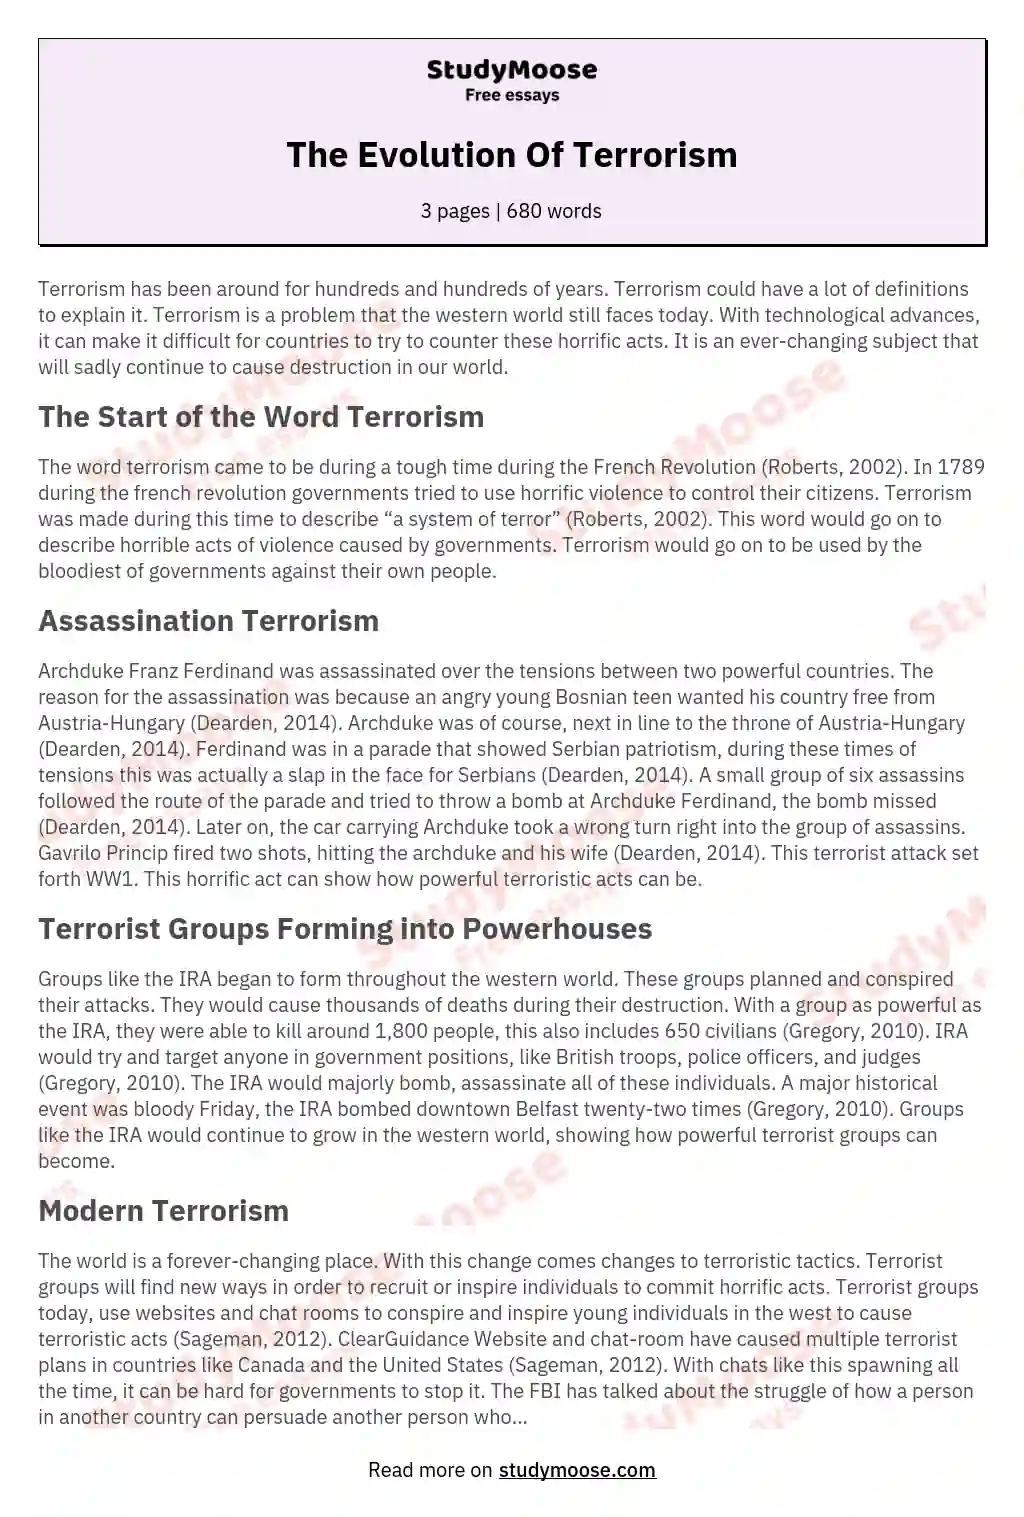 history of terrorism essay